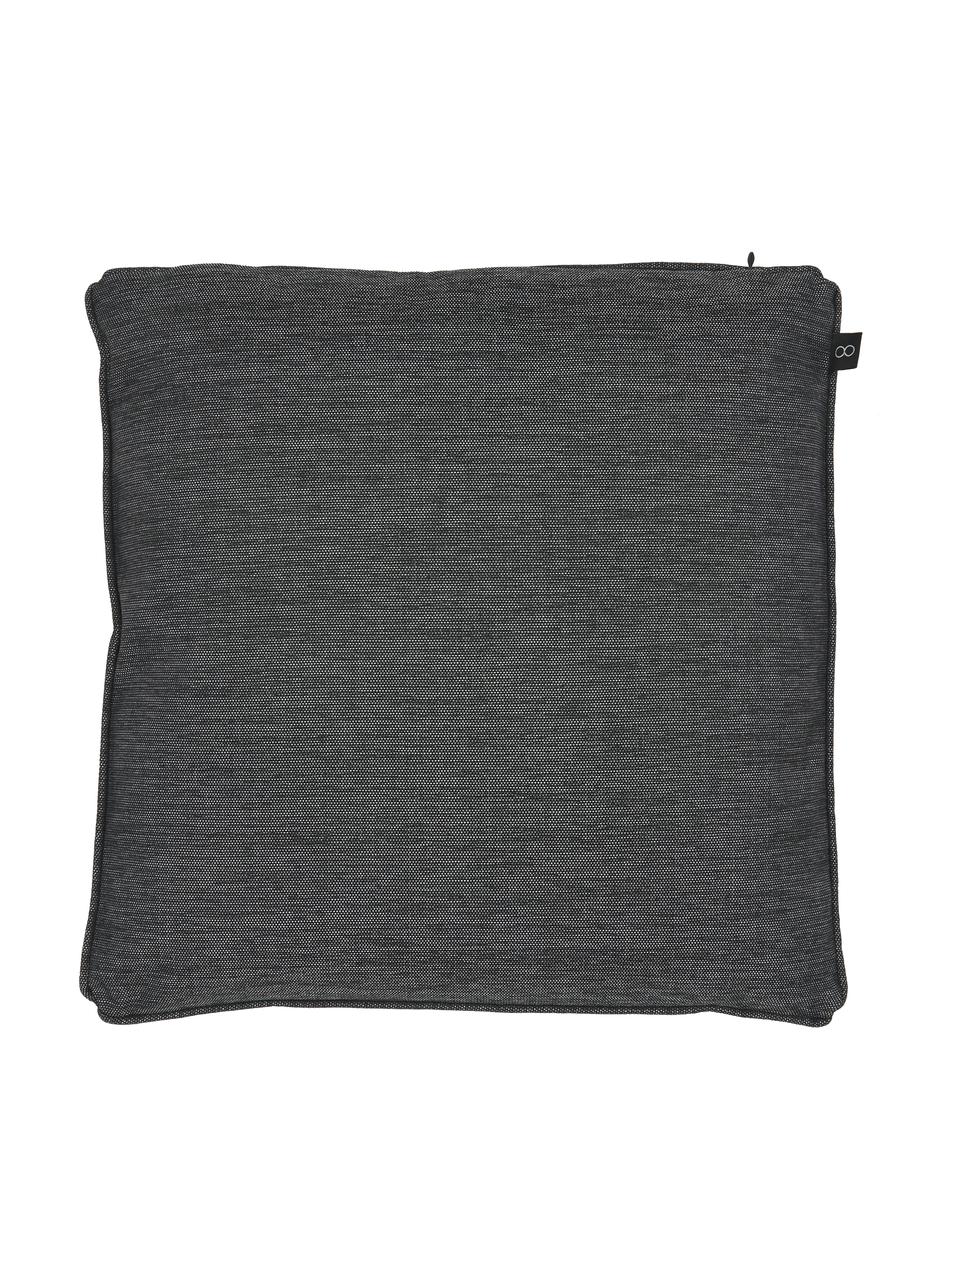 Poszewka na poduszkę Arte, 100% poliester, Czarny, biały, S 45 x D 45 cm